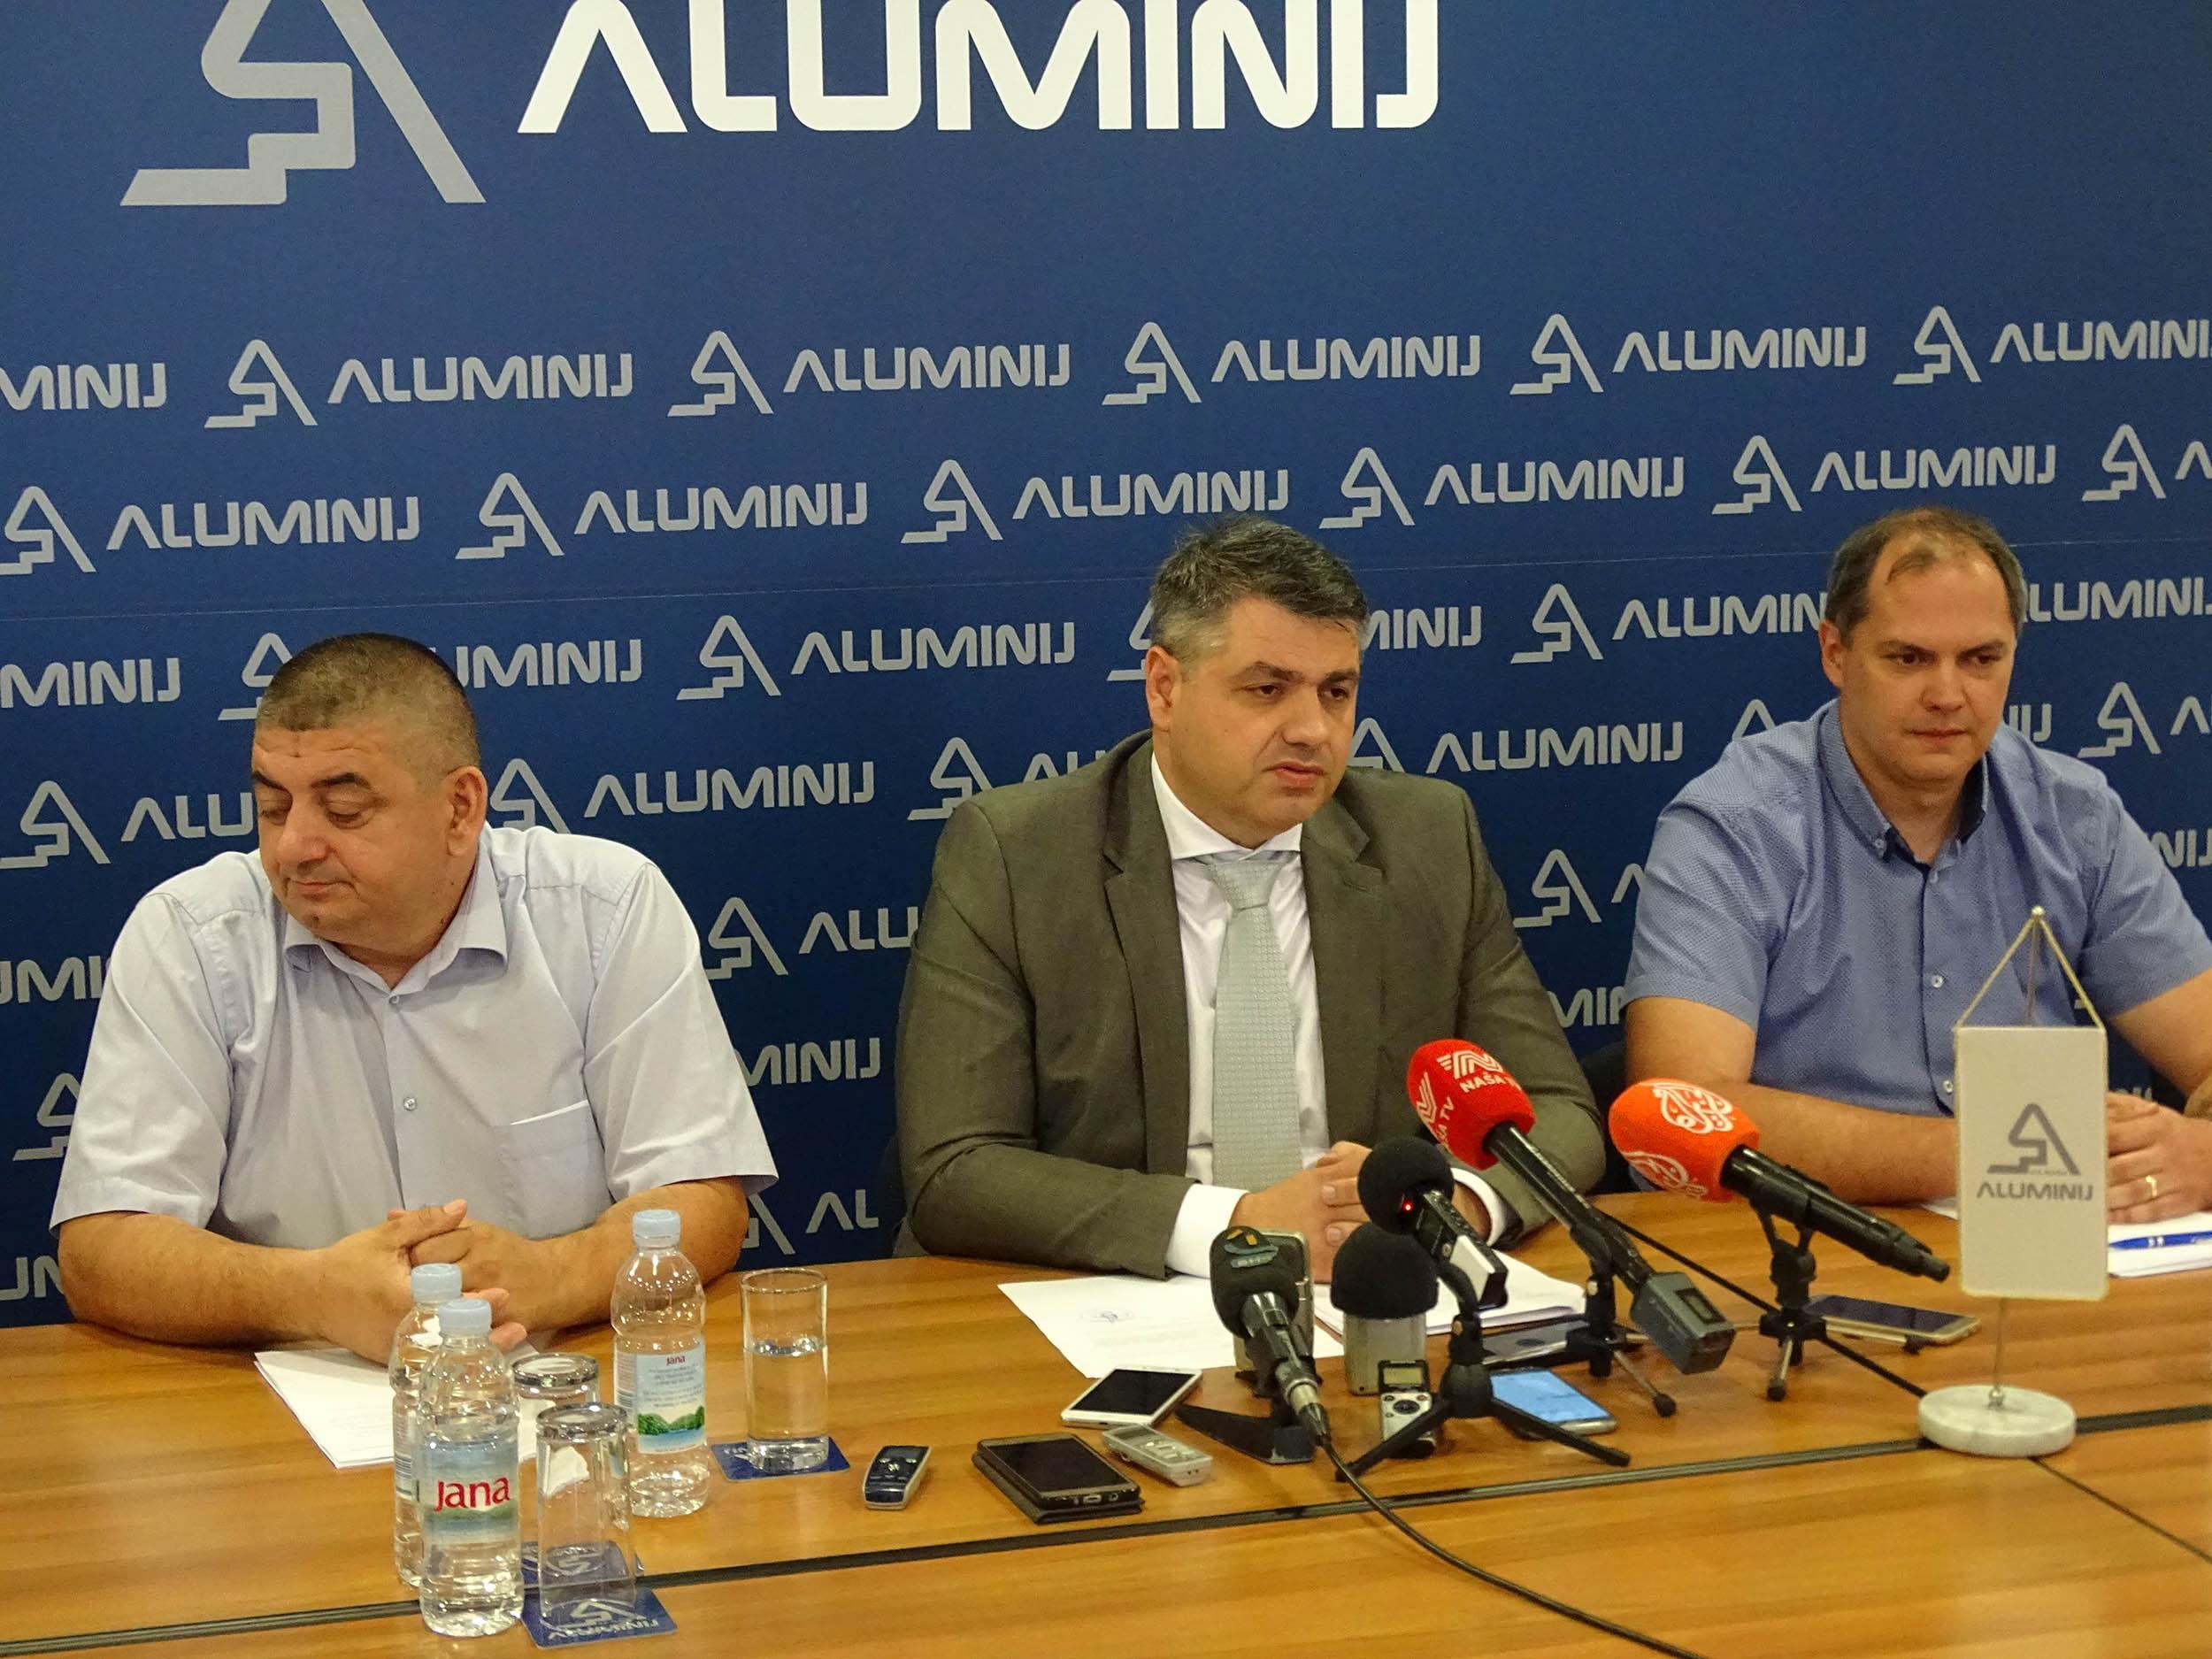 Mario Gadžić smijenjen s pozicije direktora "Aluminija", preduzeća koje je u gubitku od 360 miliona KM